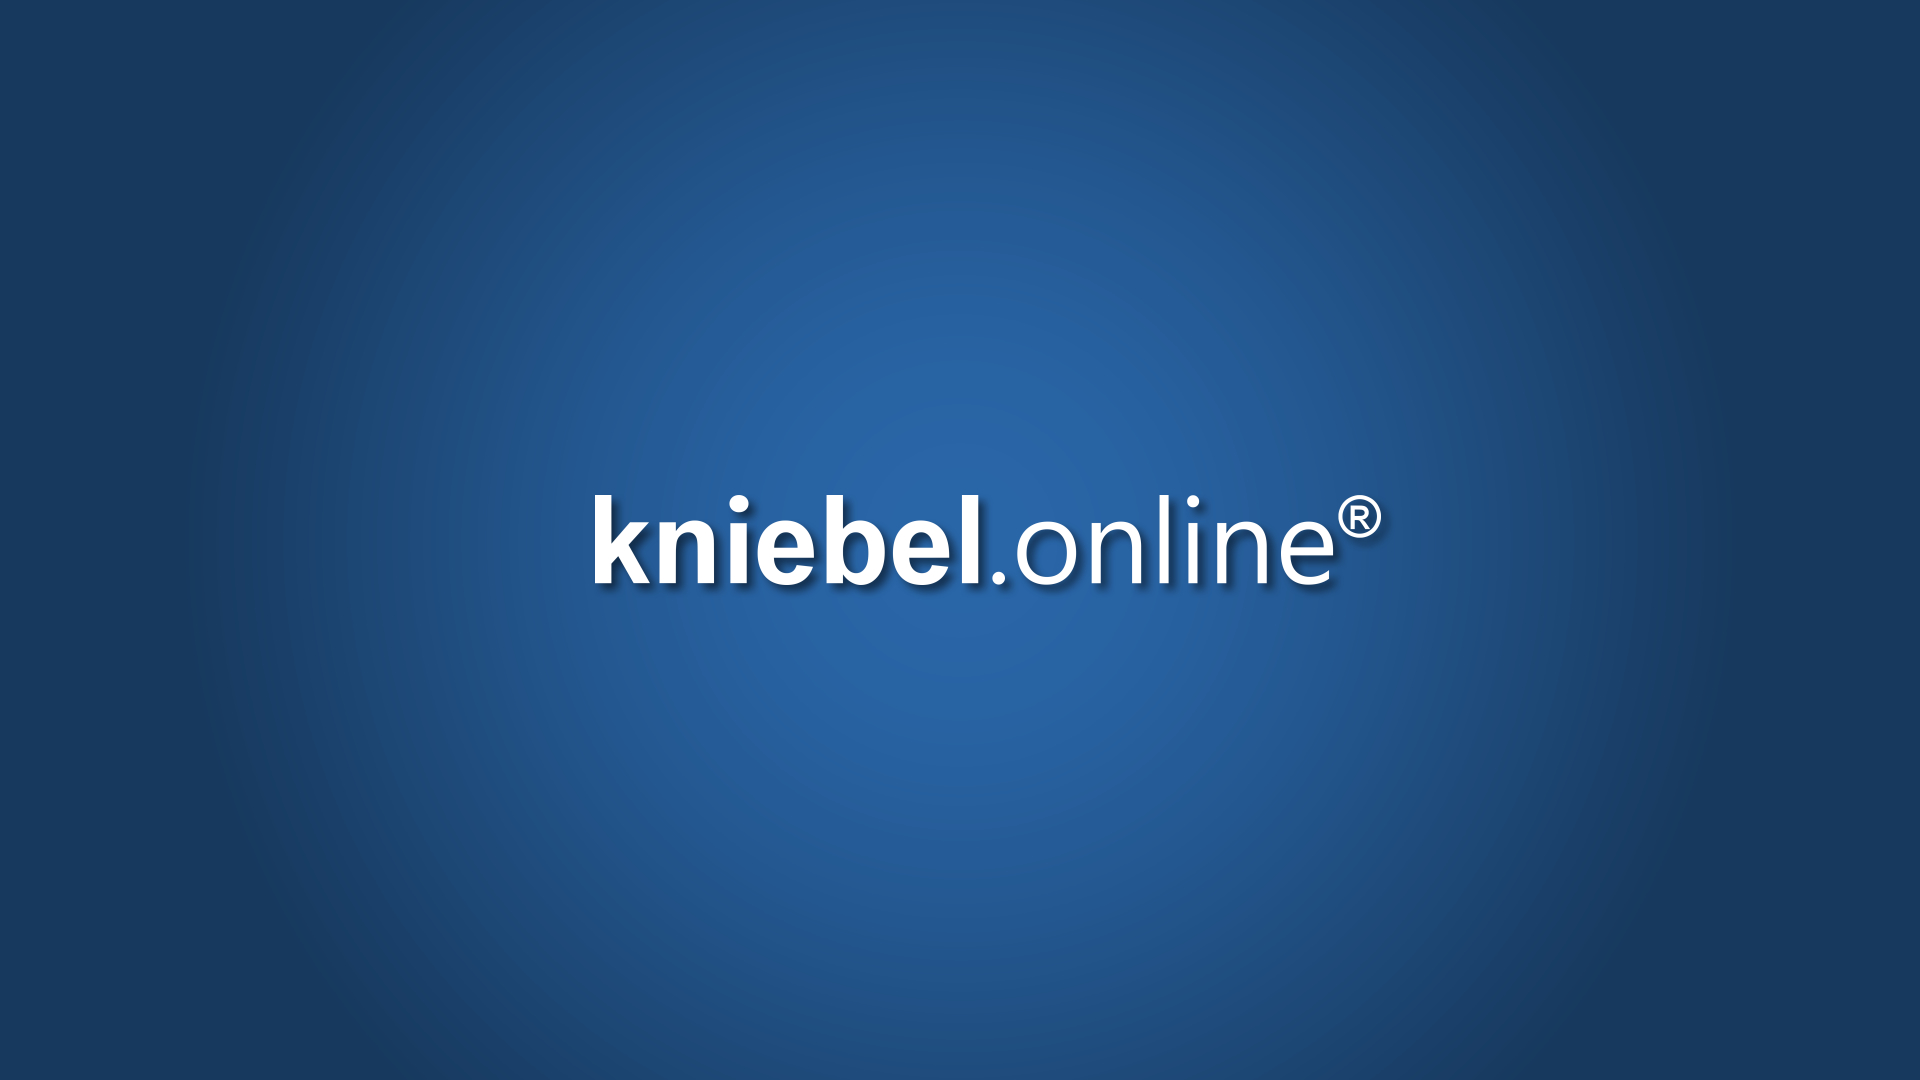 (c) Kniebel.online